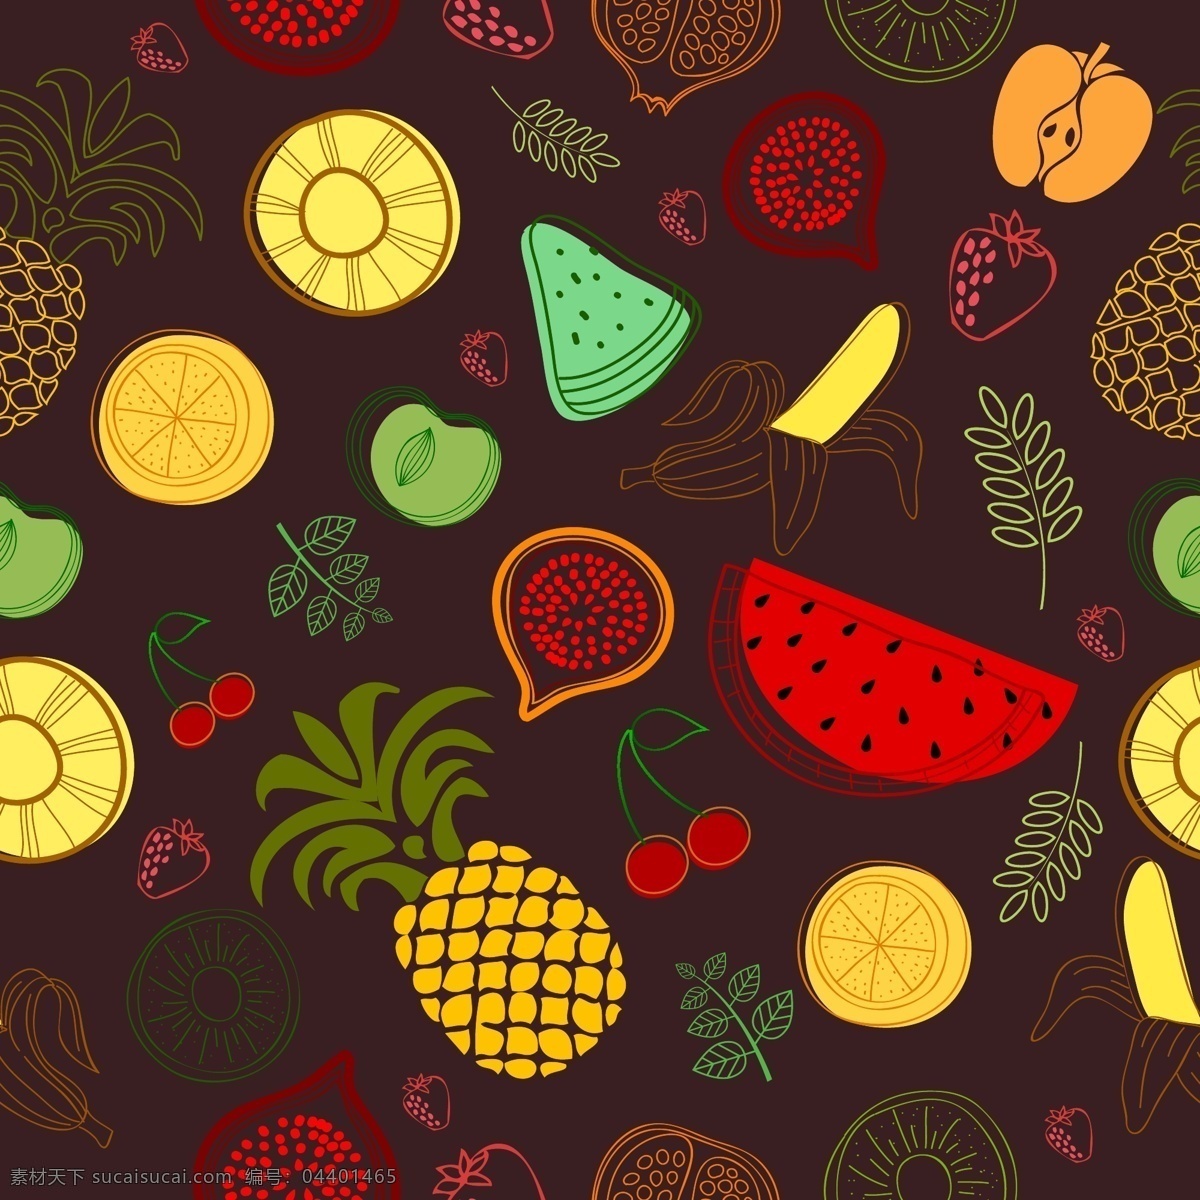 矢量 手绘 水果 背景 背景素材 水果背景 手绘水果 西瓜 菠萝 凤梨 百香果 苹果 草莓橙子 樱桃